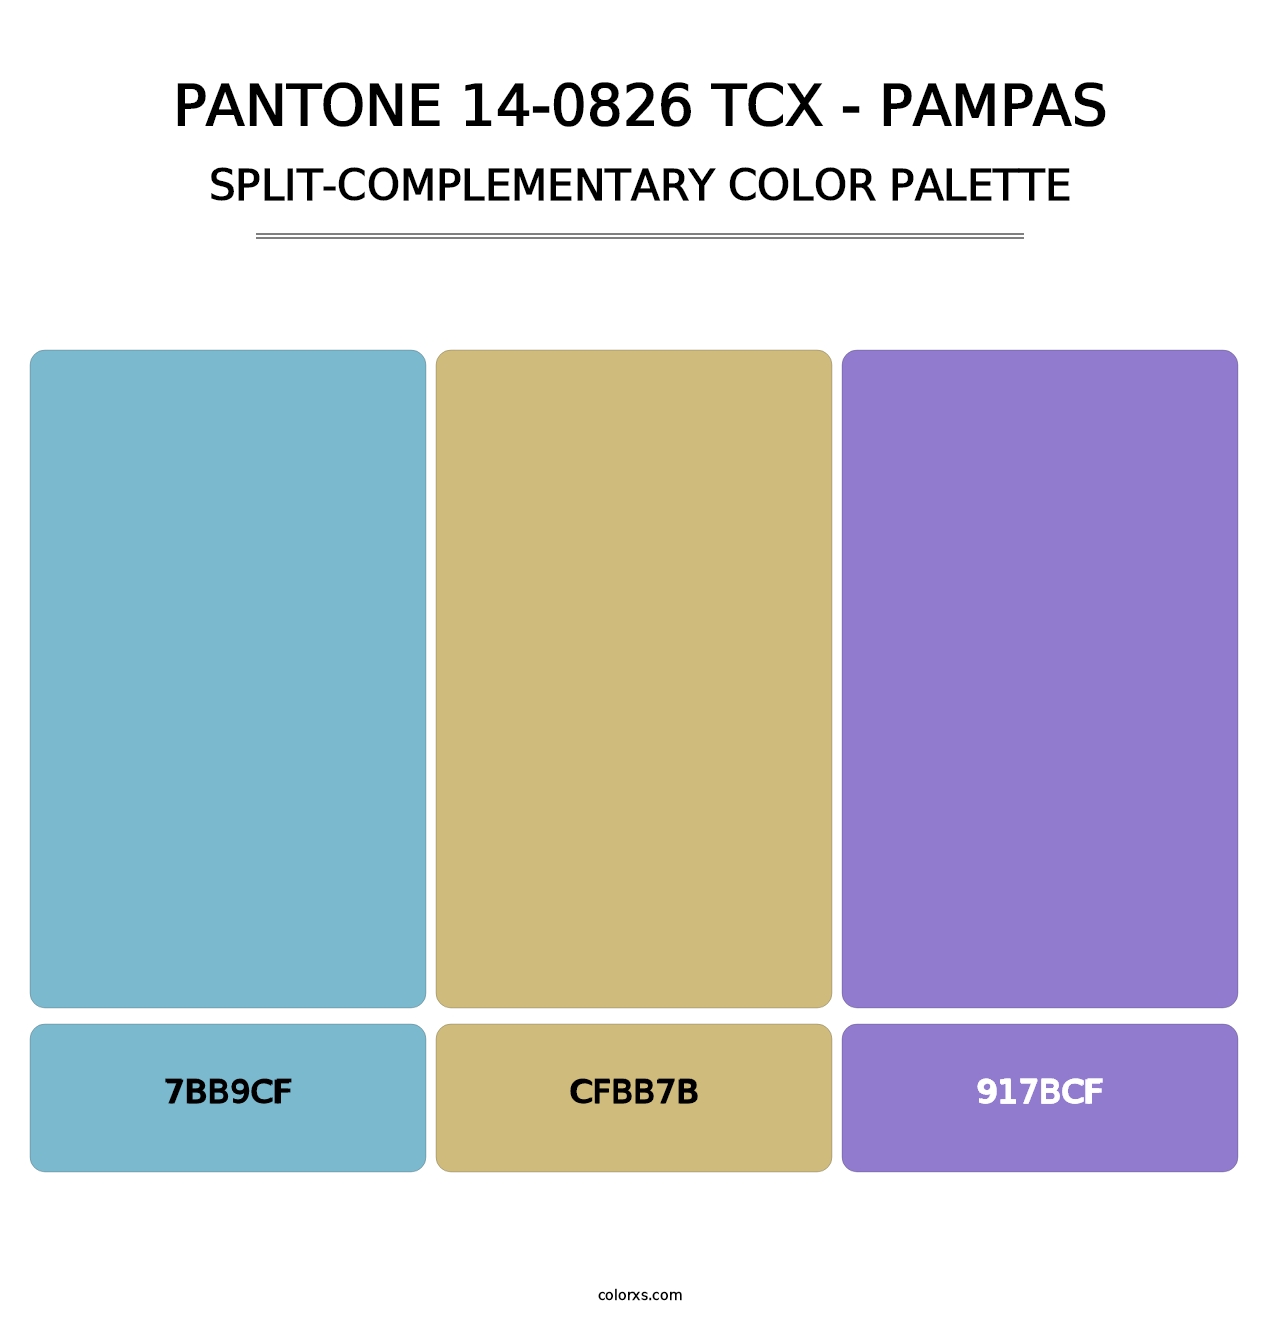 PANTONE 14-0826 TCX - Pampas - Split-Complementary Color Palette